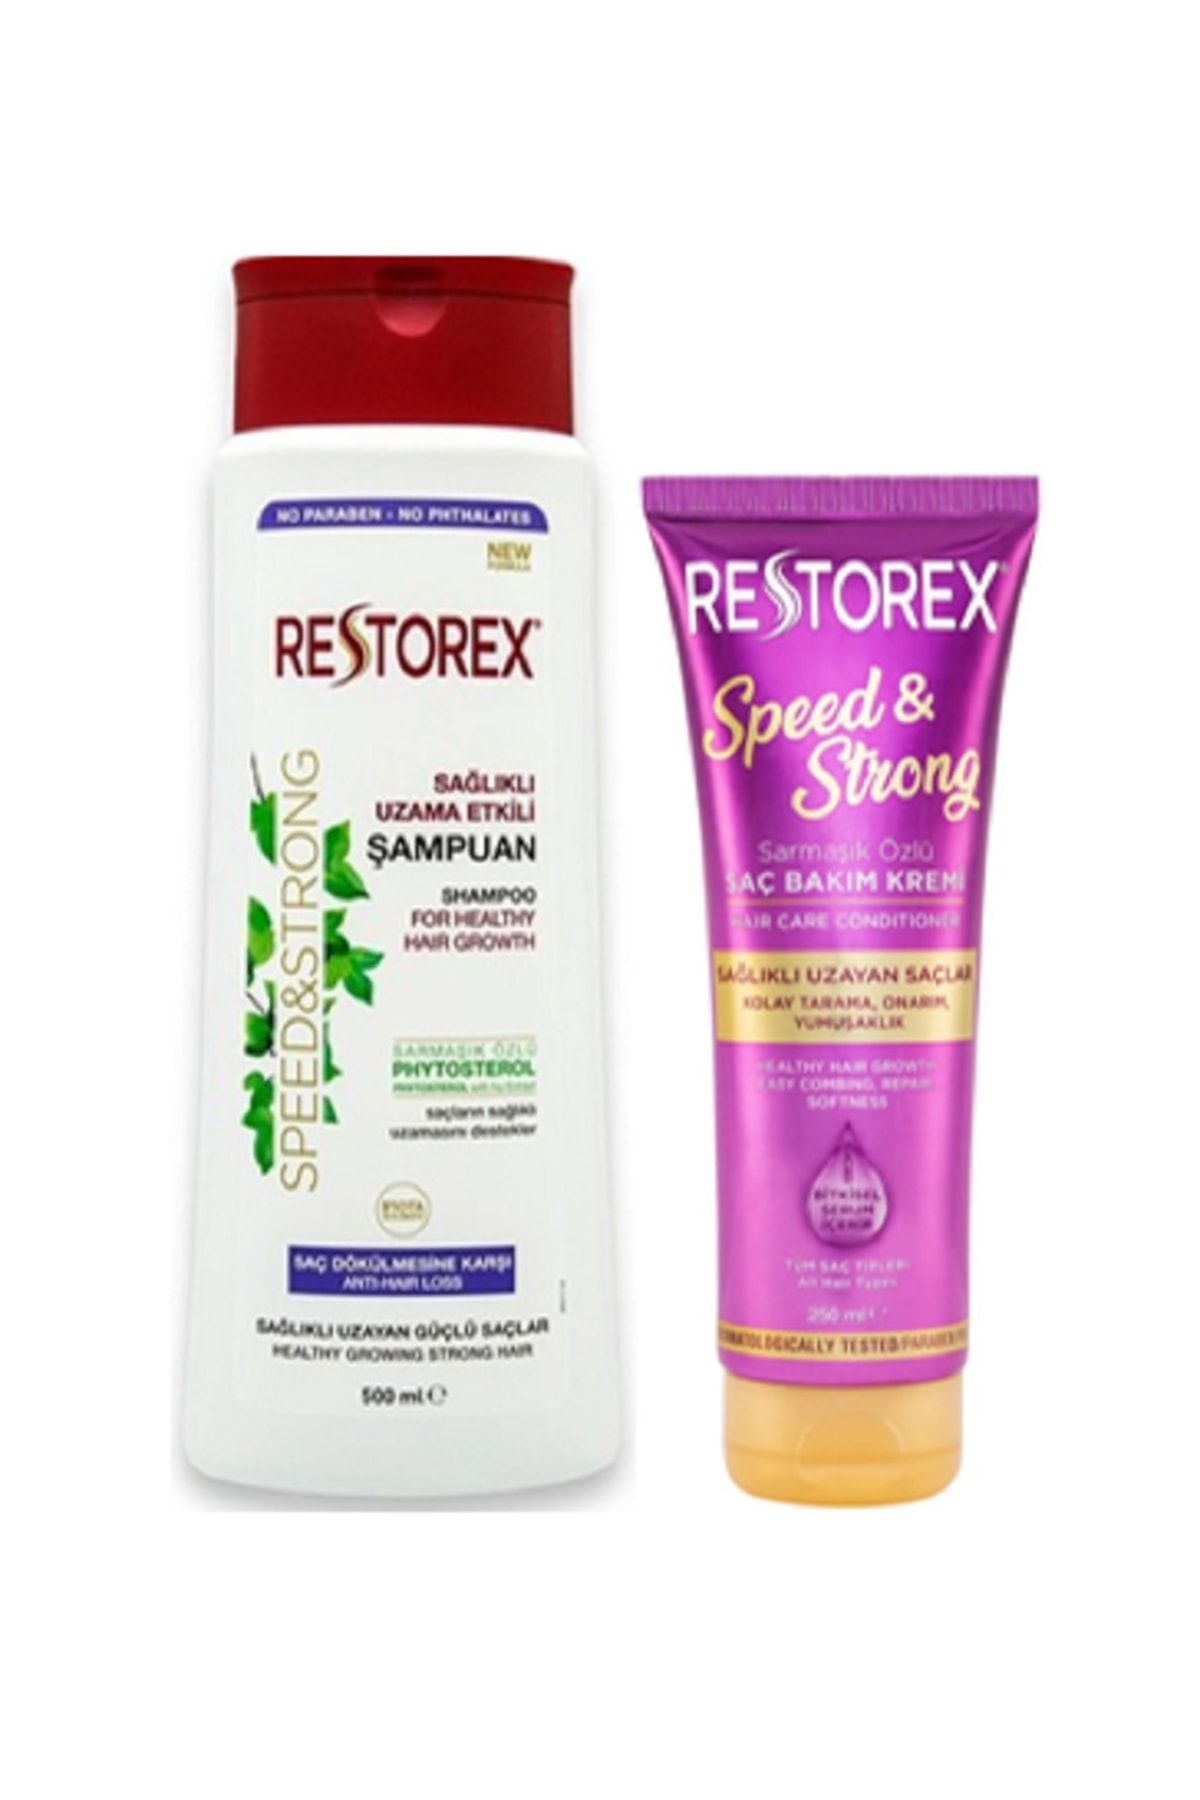 Pratikya Hızlı Saç Uzatmaya Yardımcı Set: Restorex Şampuan&sağlıklı Uzama Etkili Onarıcı Saç Bakım Kremi